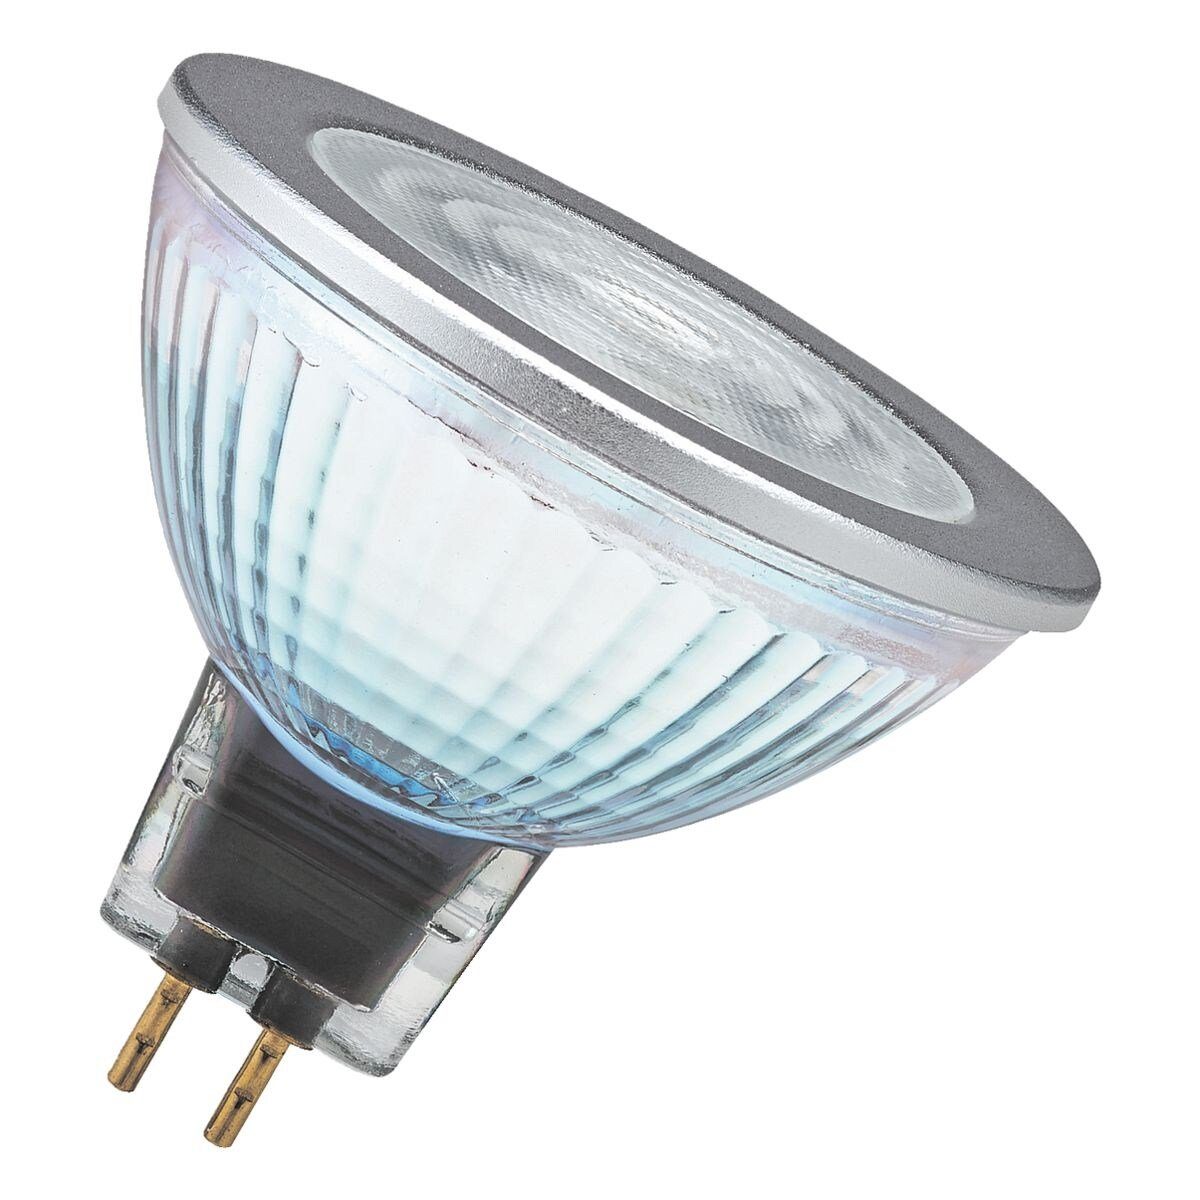 Osram LED-Leuchtmittel Superstar MR16 kaltweiß, 50, GU5.3, Retrofit-Stecksockel 8 W, mit